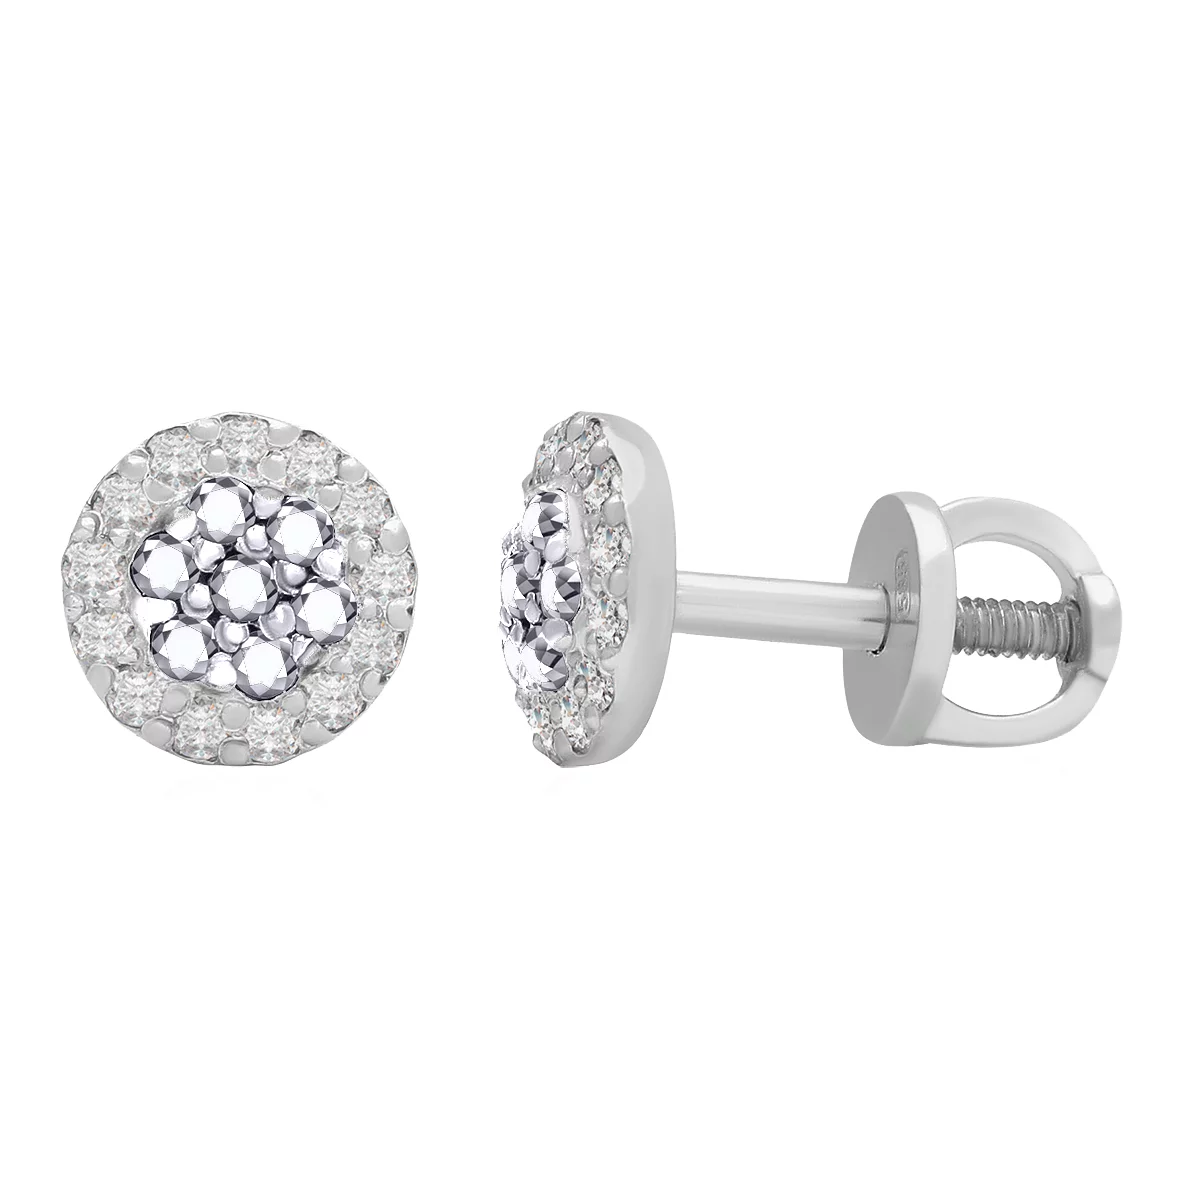 Сережки-гвоздики из белого золота с бриллиантами. Артикул 102-10072б: цена, отзывы, фото – купить в интернет-магазине AURUM